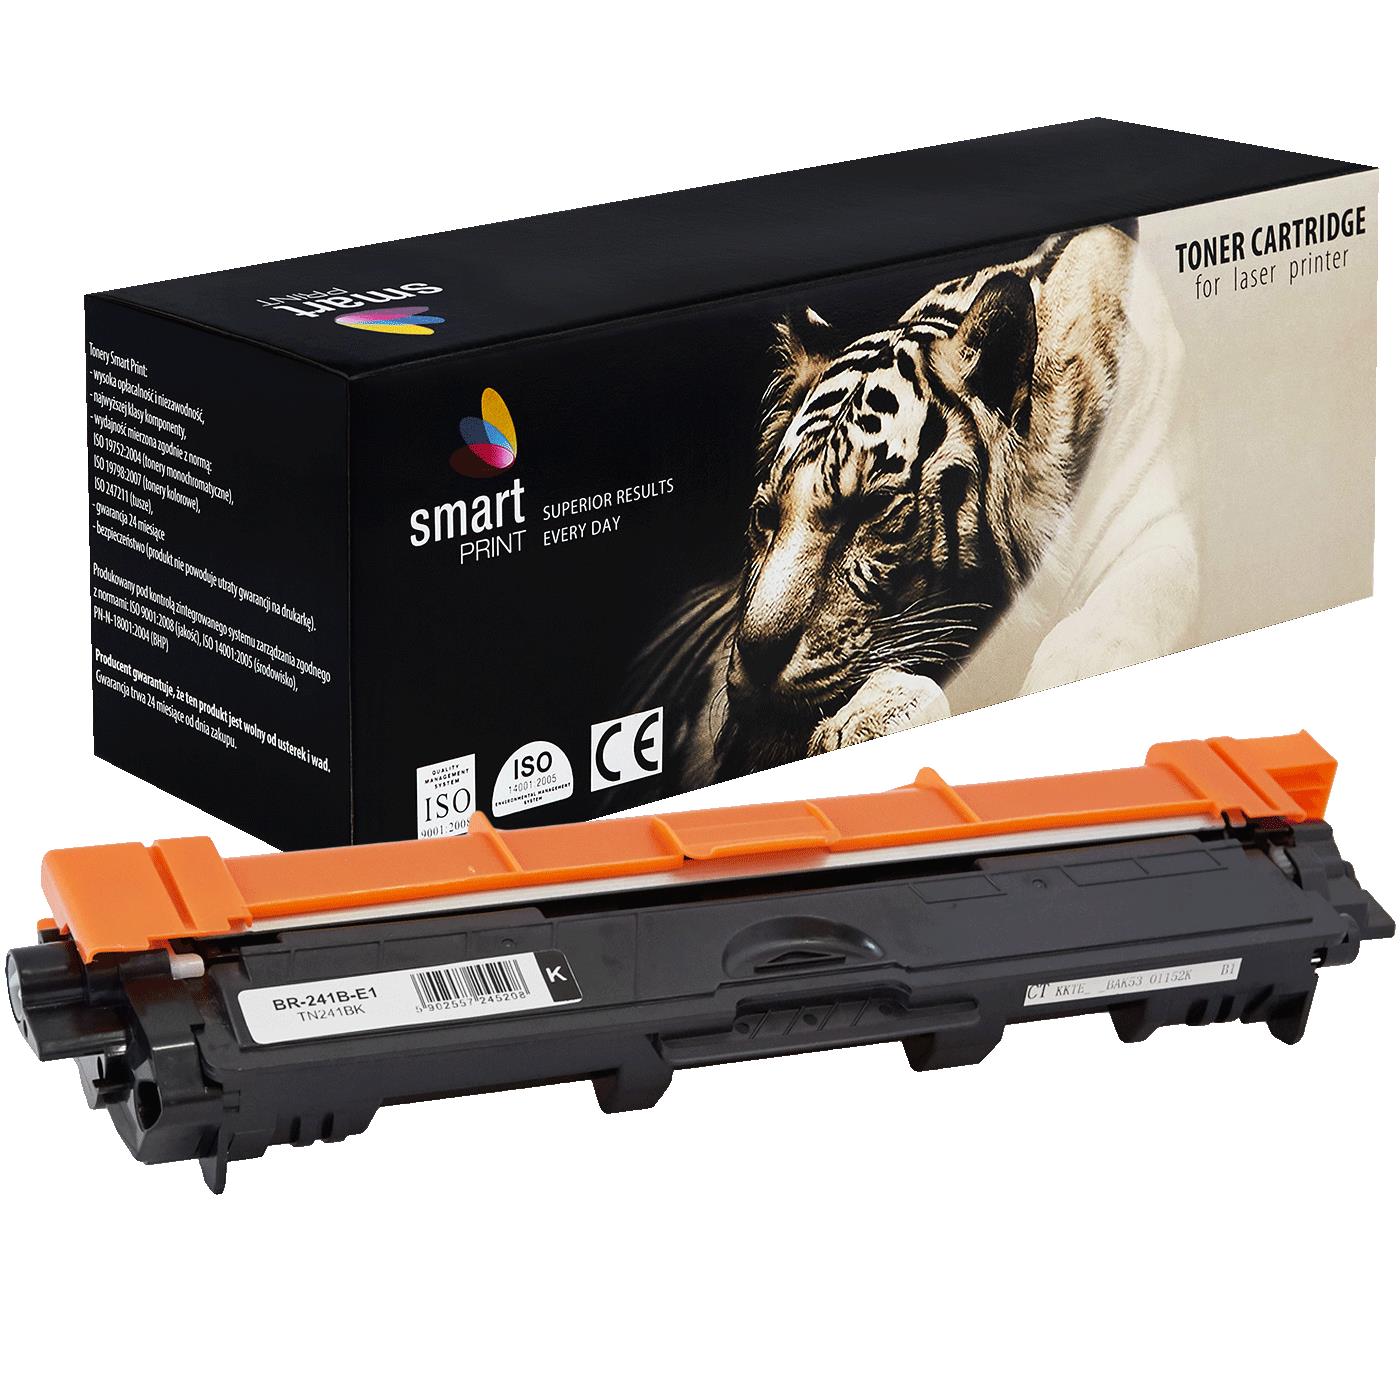 съвместима тонер касета за принтери и печатащи устройства на Brother HL-3140 CW Toner BR-241B | TN241BK / TN-241 / TN245. Ниски цени, прецизно изпълнение, високо качество.